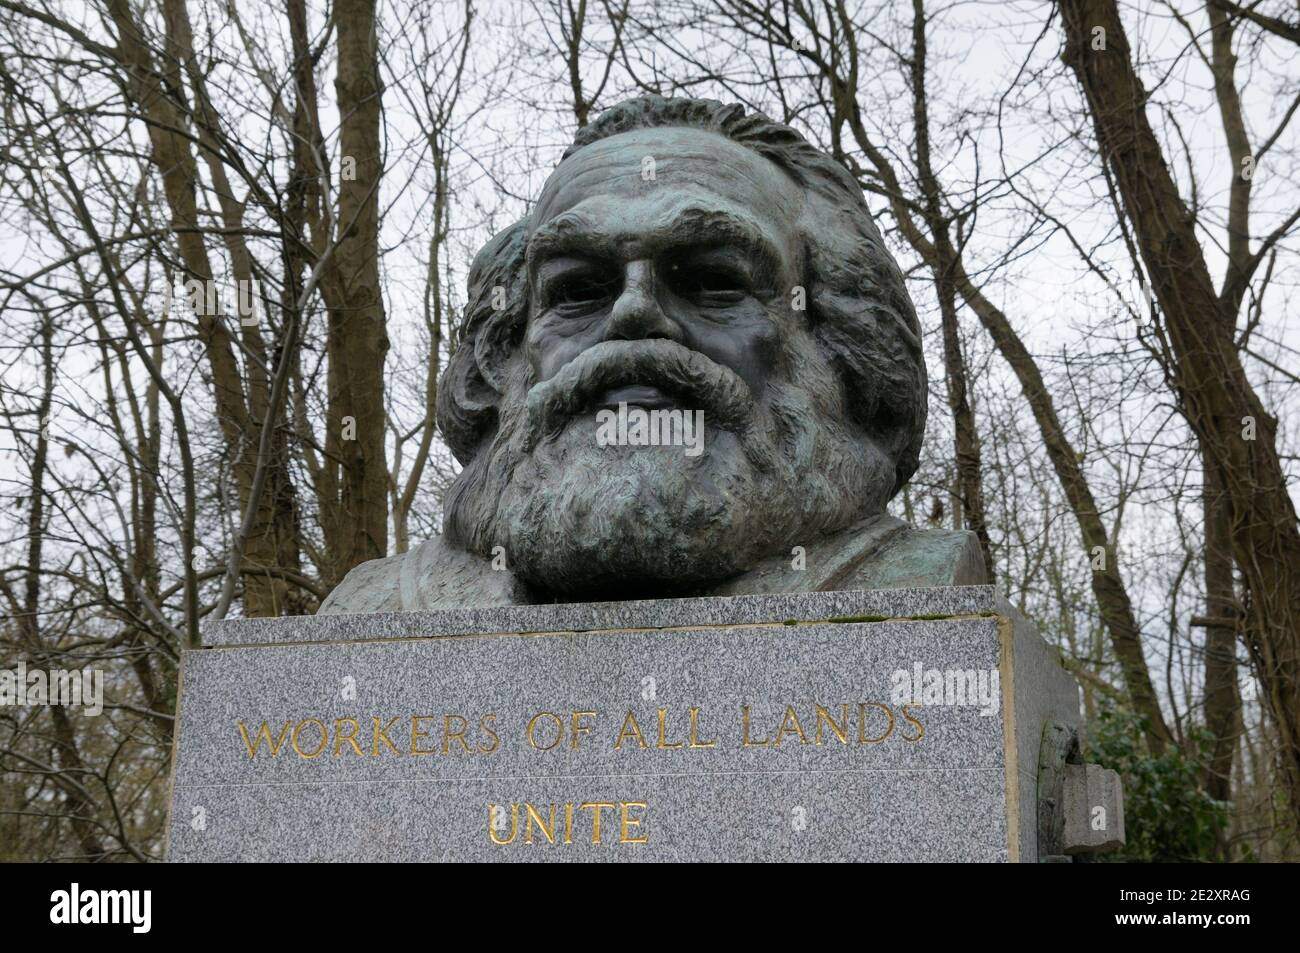 Bronzebüste über dem Grab und Grab des berühmten Philosophen und Revolutionärs Karl Marx aus dem 19. Jahrhundert, Highgate Cemetery, London, England, Großbritannien Stockfoto